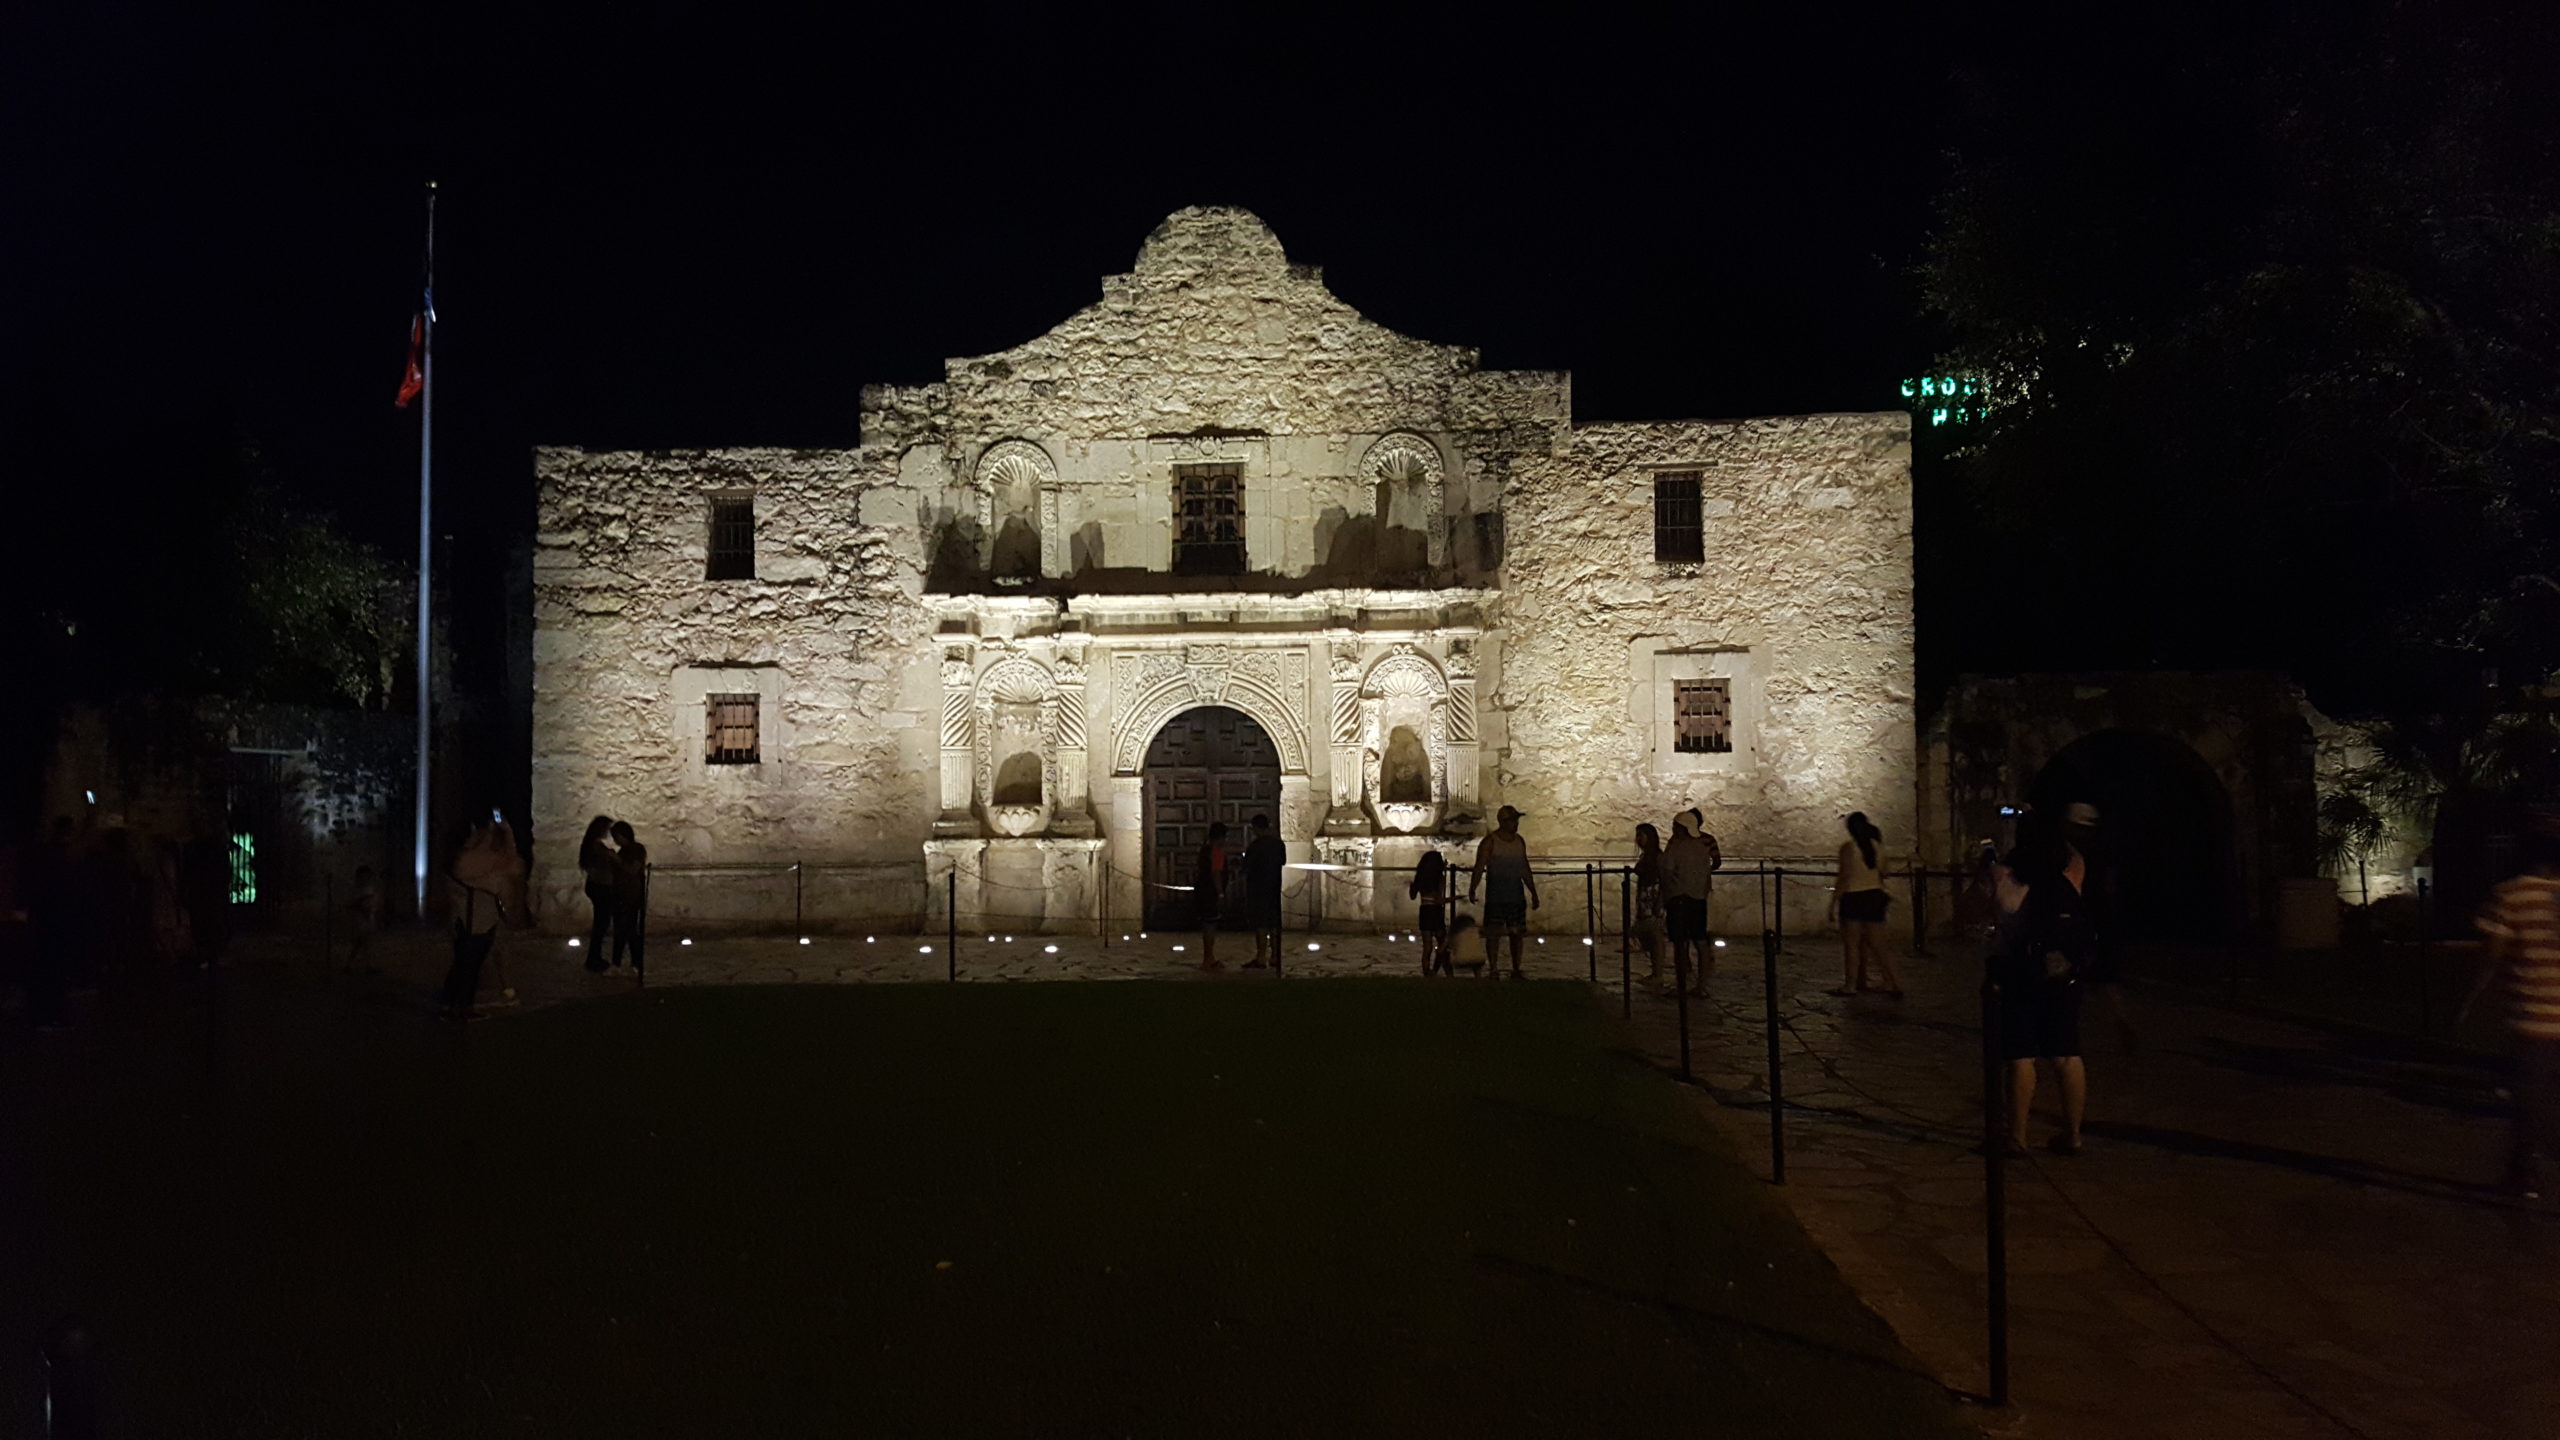 Alamo - San Antonio